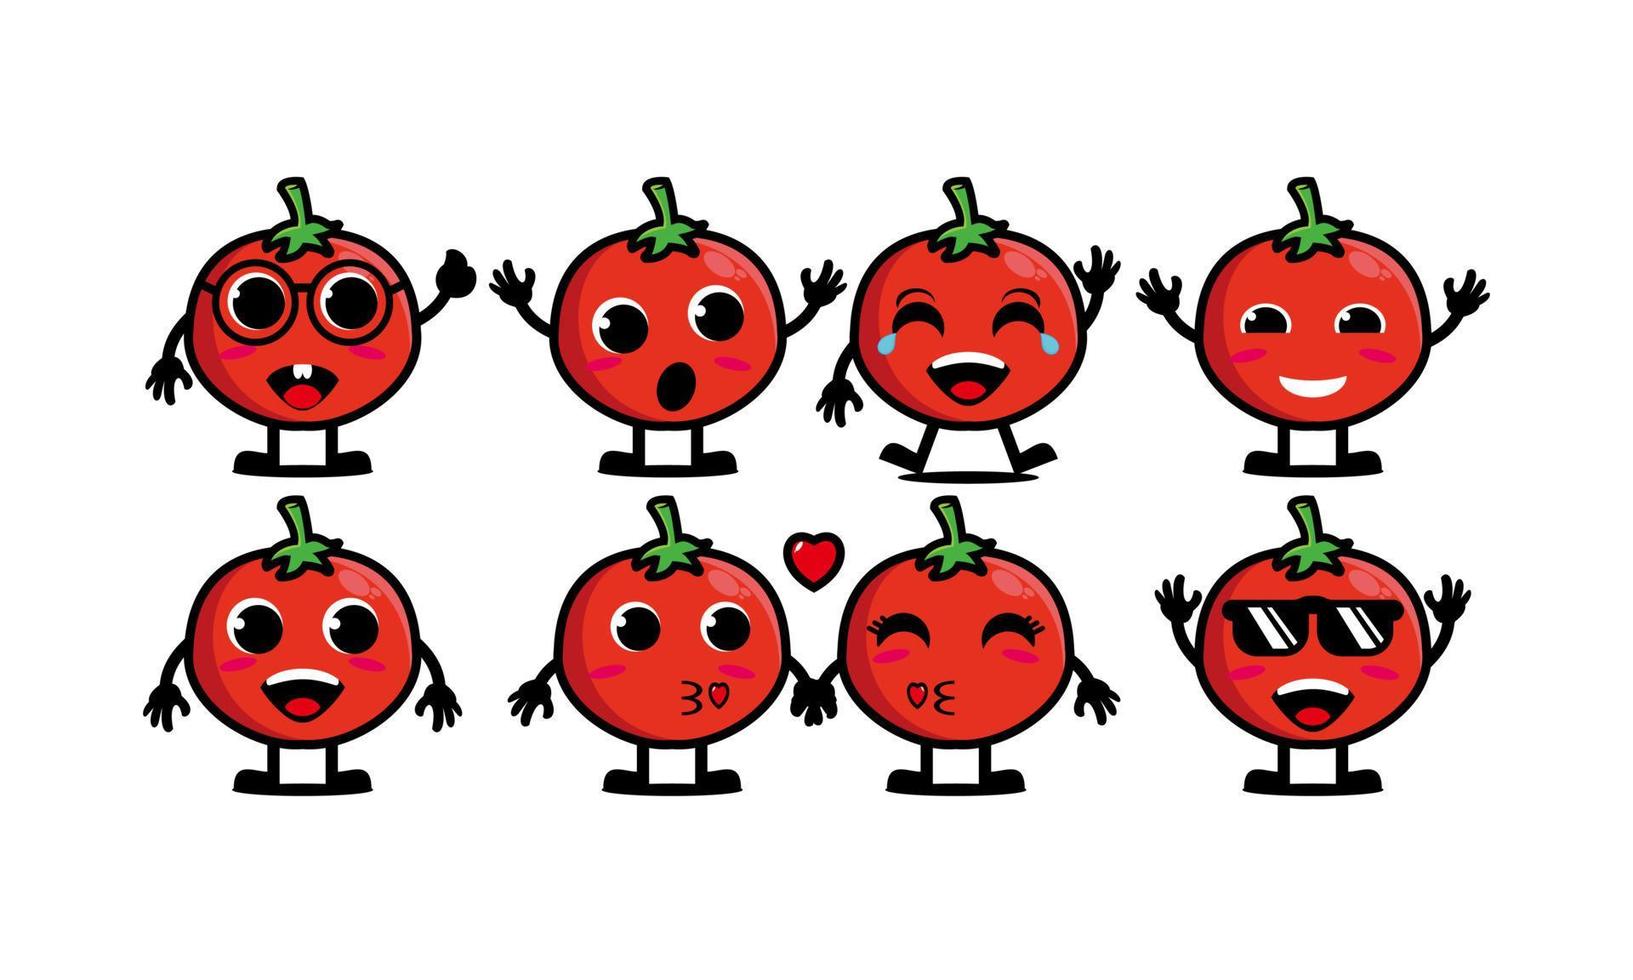 nette lächelnde lustige tomatensatzsammlung flache karikaturgesichtscharakter-maskottchenillustration des vektors lokalisiert auf weißem hintergrund vektor